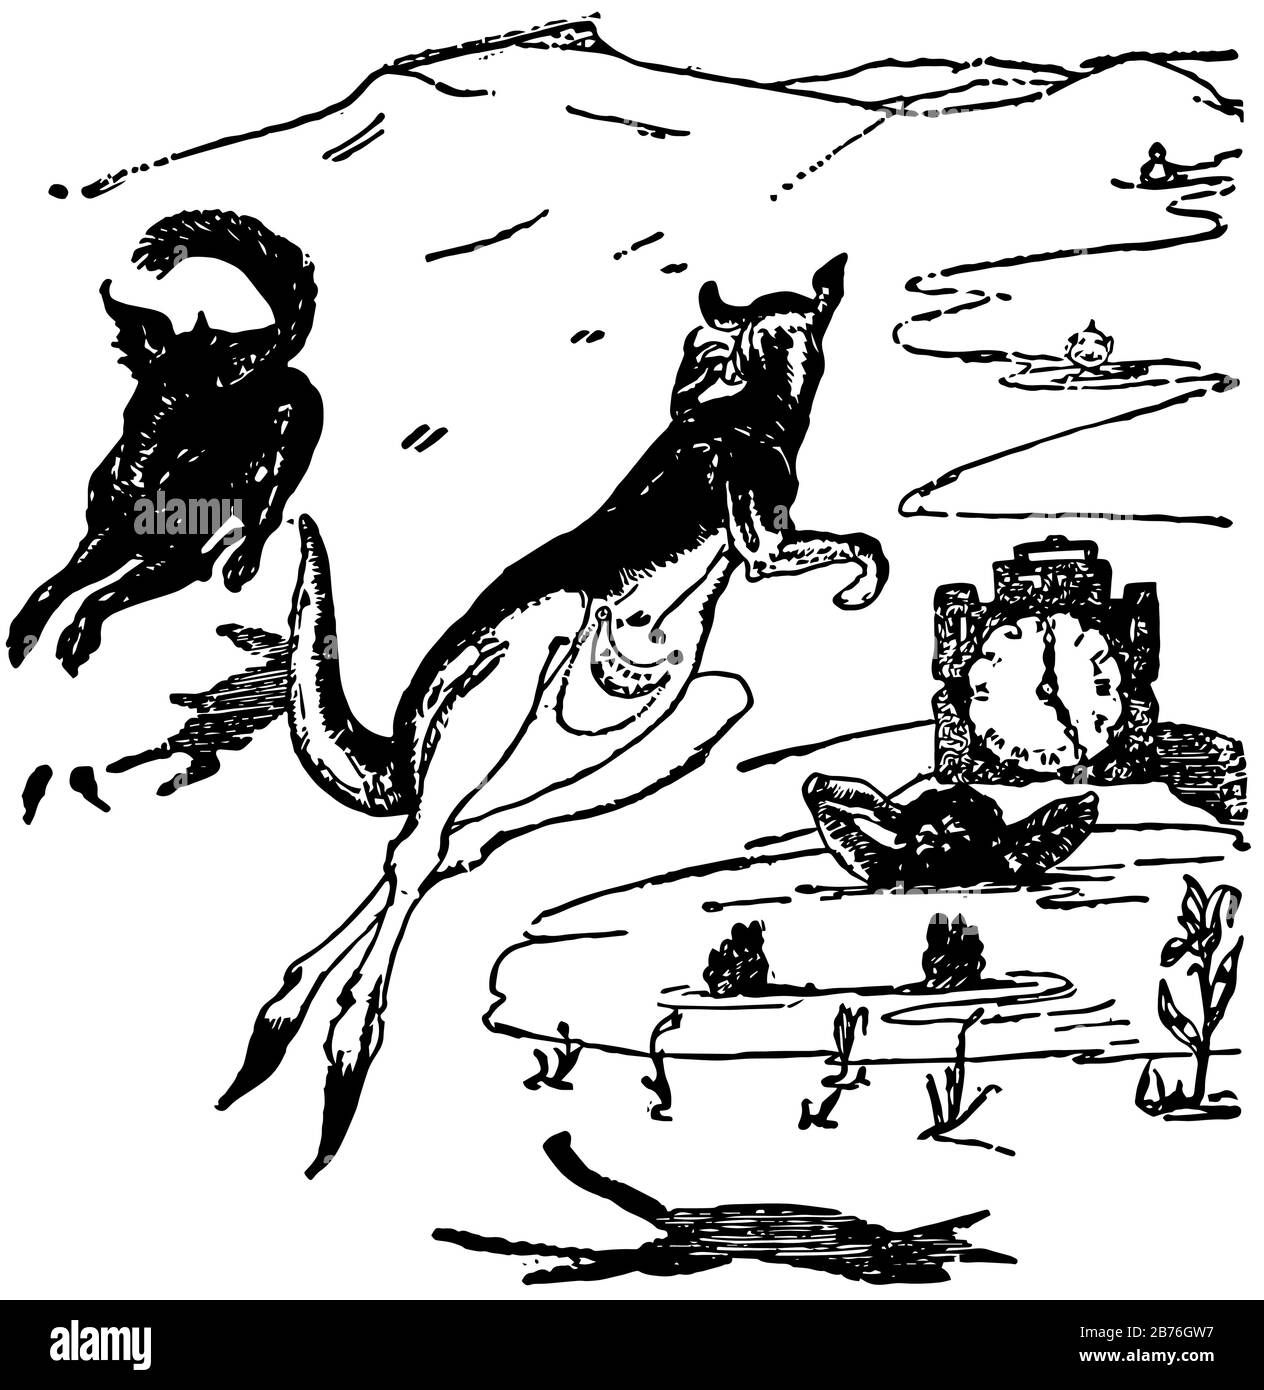 Old Man Kangaroo, cette scène montre deux animaux en marche et un homme dans l'eau, montagnes en arrière-plan, dessin vintage de ligne ou illustration de gravure Illustration de Vecteur